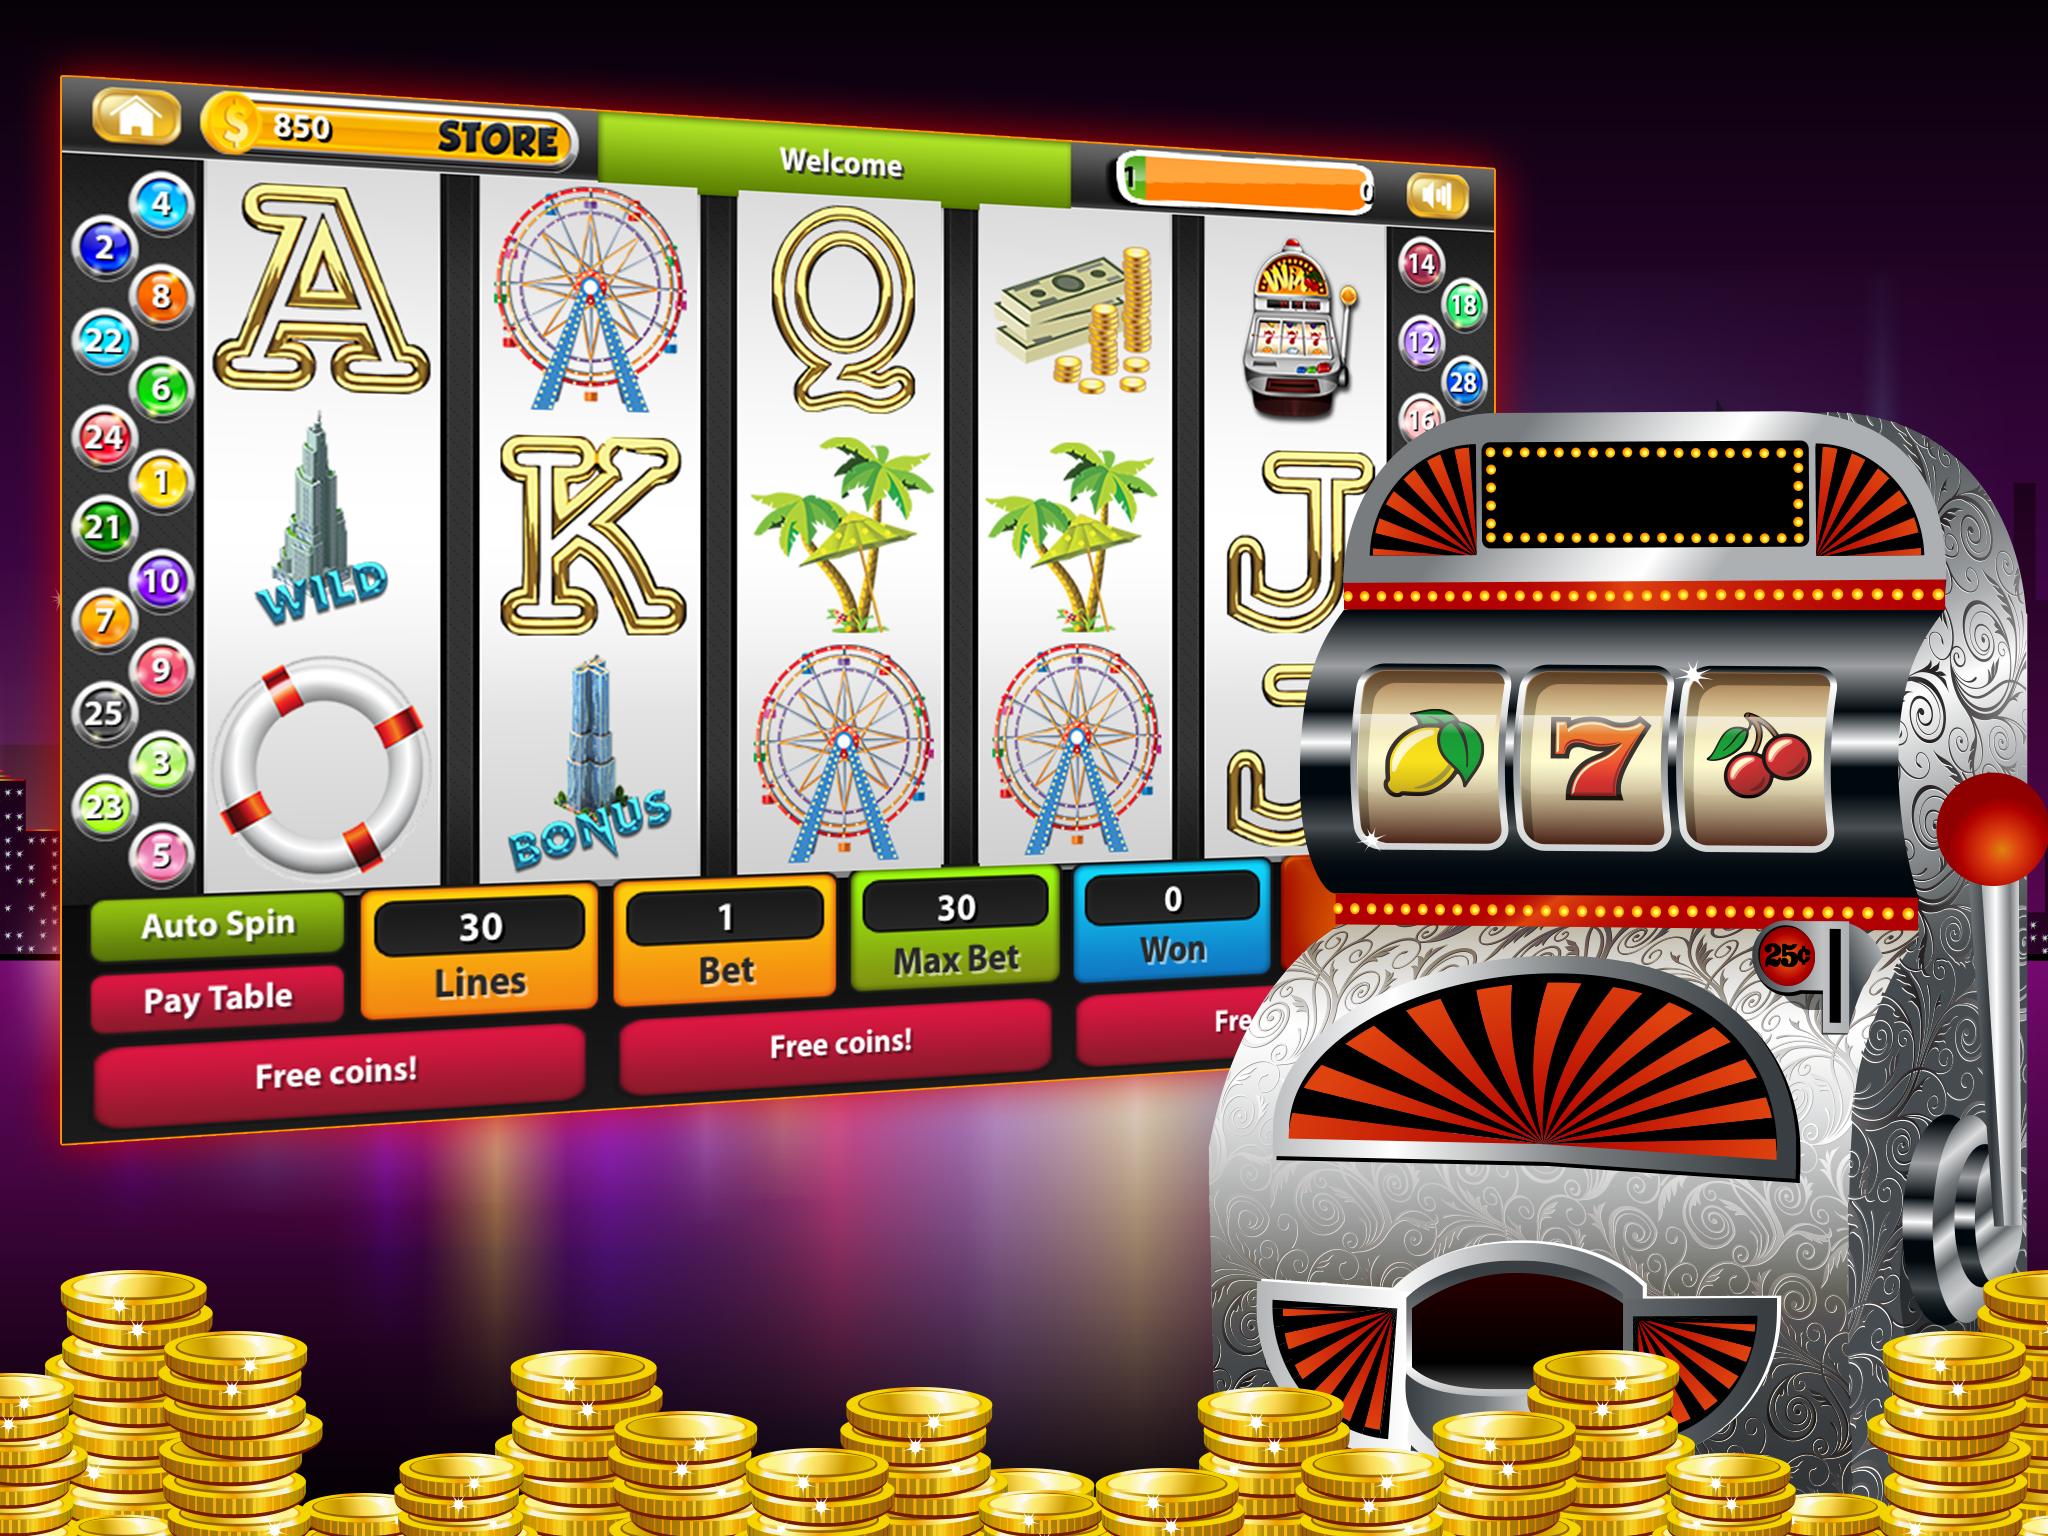 Игровые автоматы играть онлайн казино на деньги промокод на бесплатную ставку azino777 zerkalo com